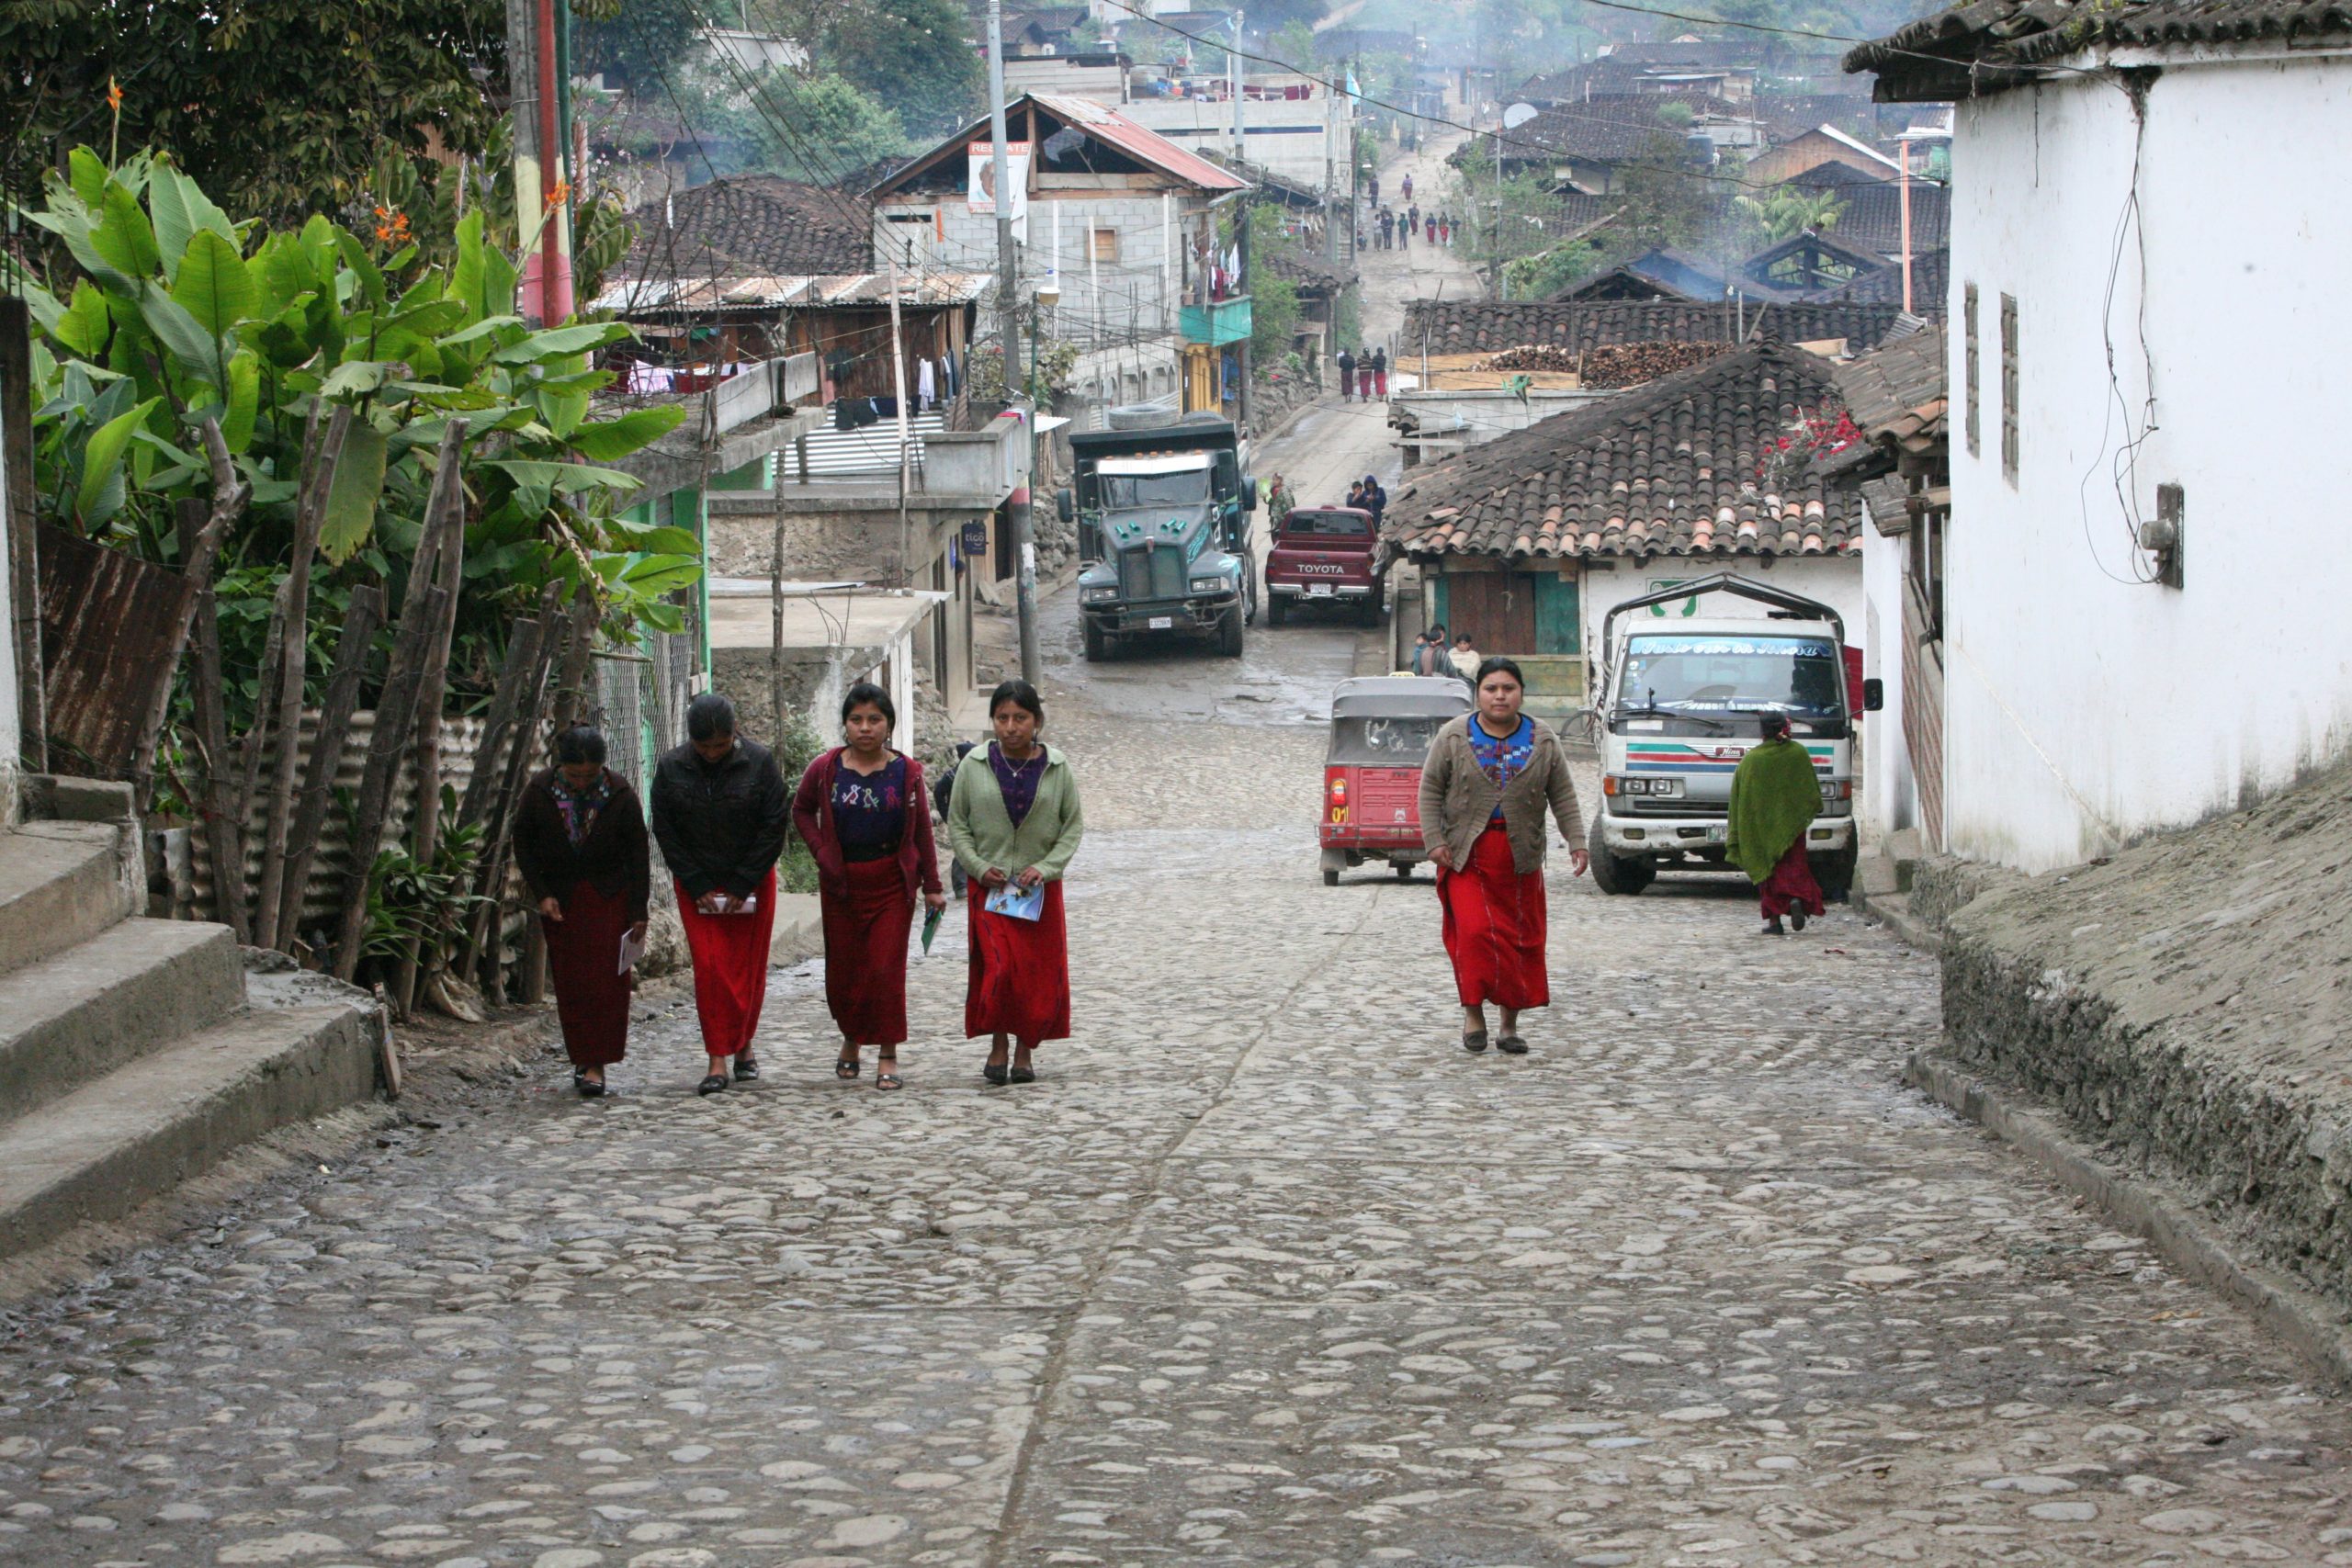 Una escena callejera en Chajul, Guatemala, donde se encuentra la Asociación Chajulense. © Sean Hawkey